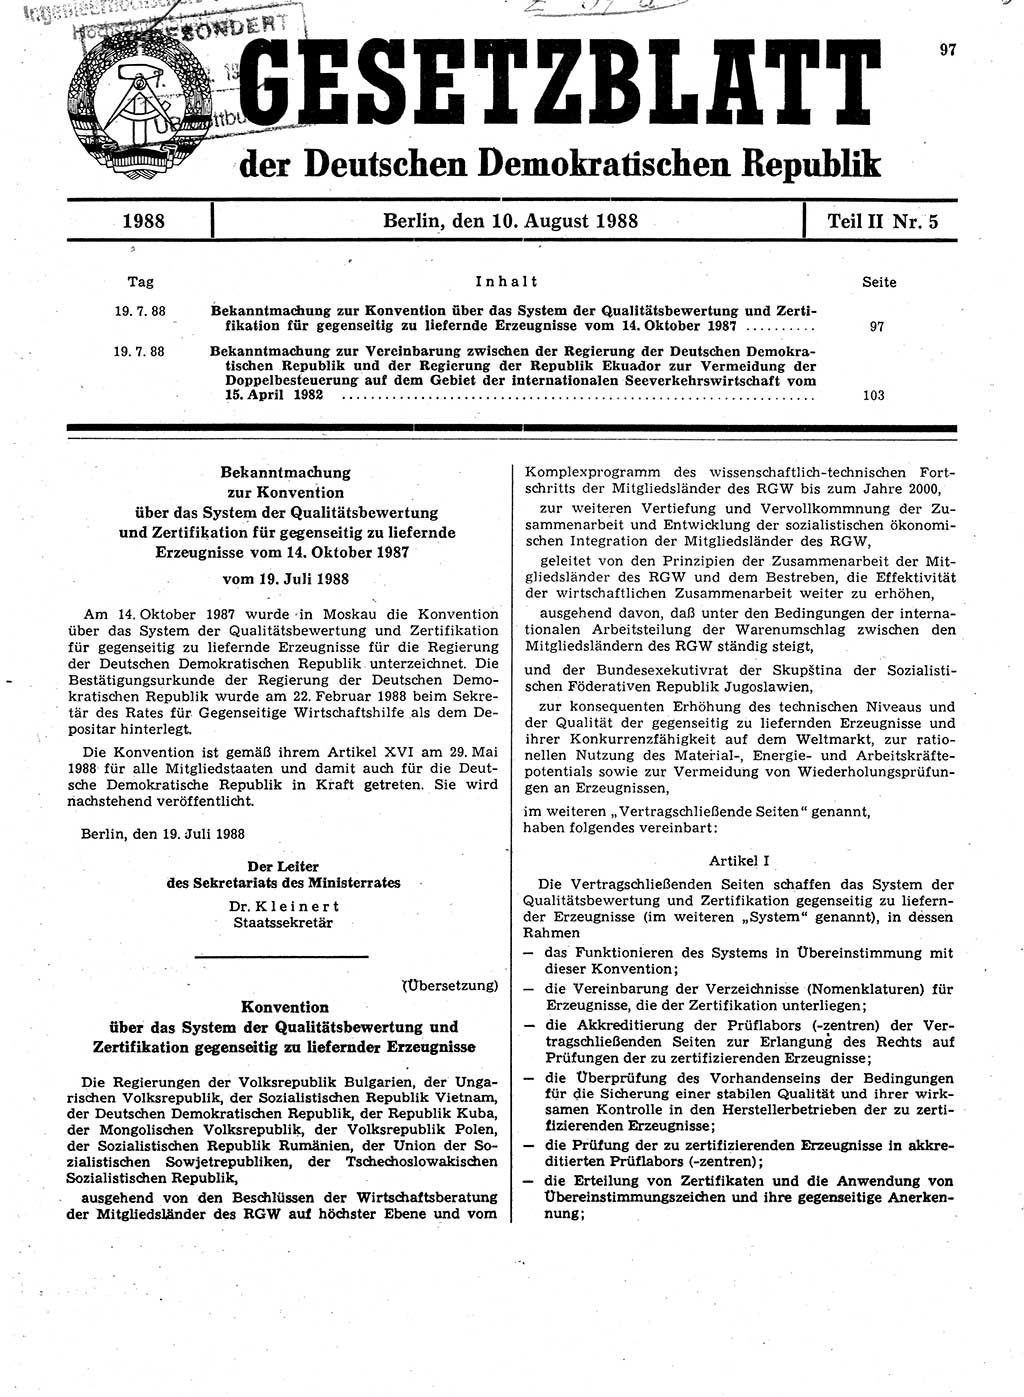 Gesetzblatt (GBl.) der Deutschen Demokratischen Republik (DDR) Teil ⅠⅠ 1988, Seite 97 (GBl. DDR ⅠⅠ 1988, S. 97)